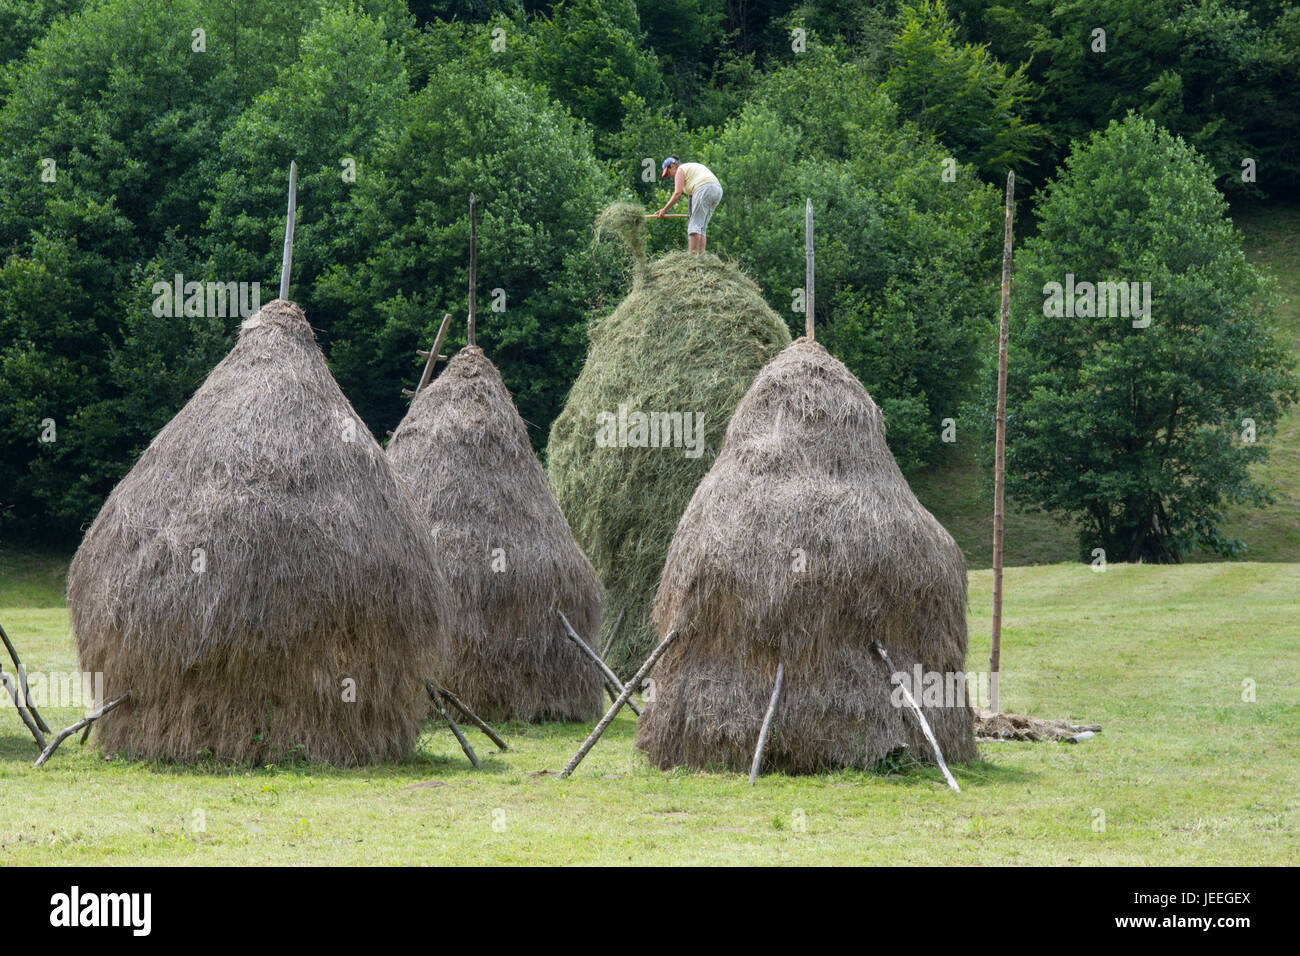 hay harvest in Romania Stock Photo